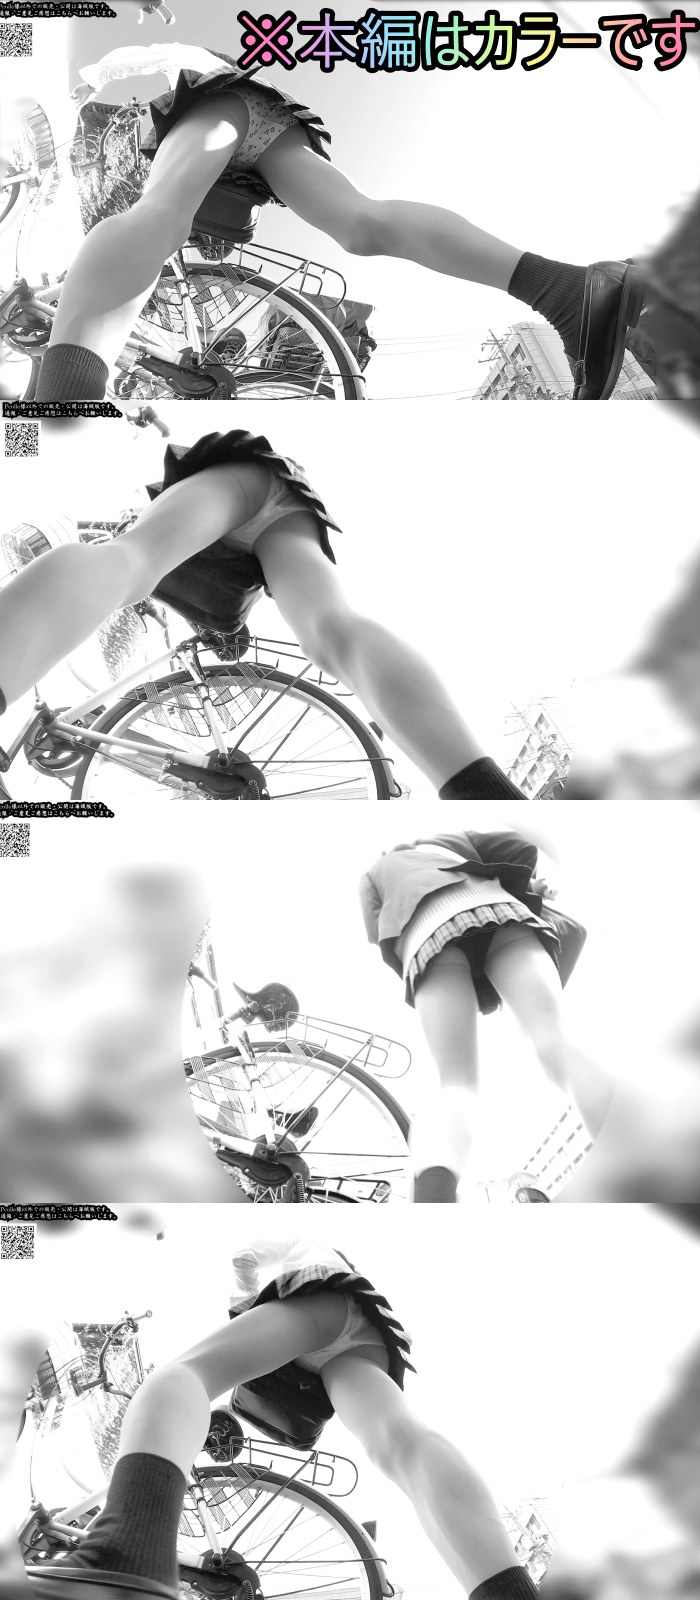 カメラを仕込んだ自転車をミニスカJK自転車の隣に・・・7日分